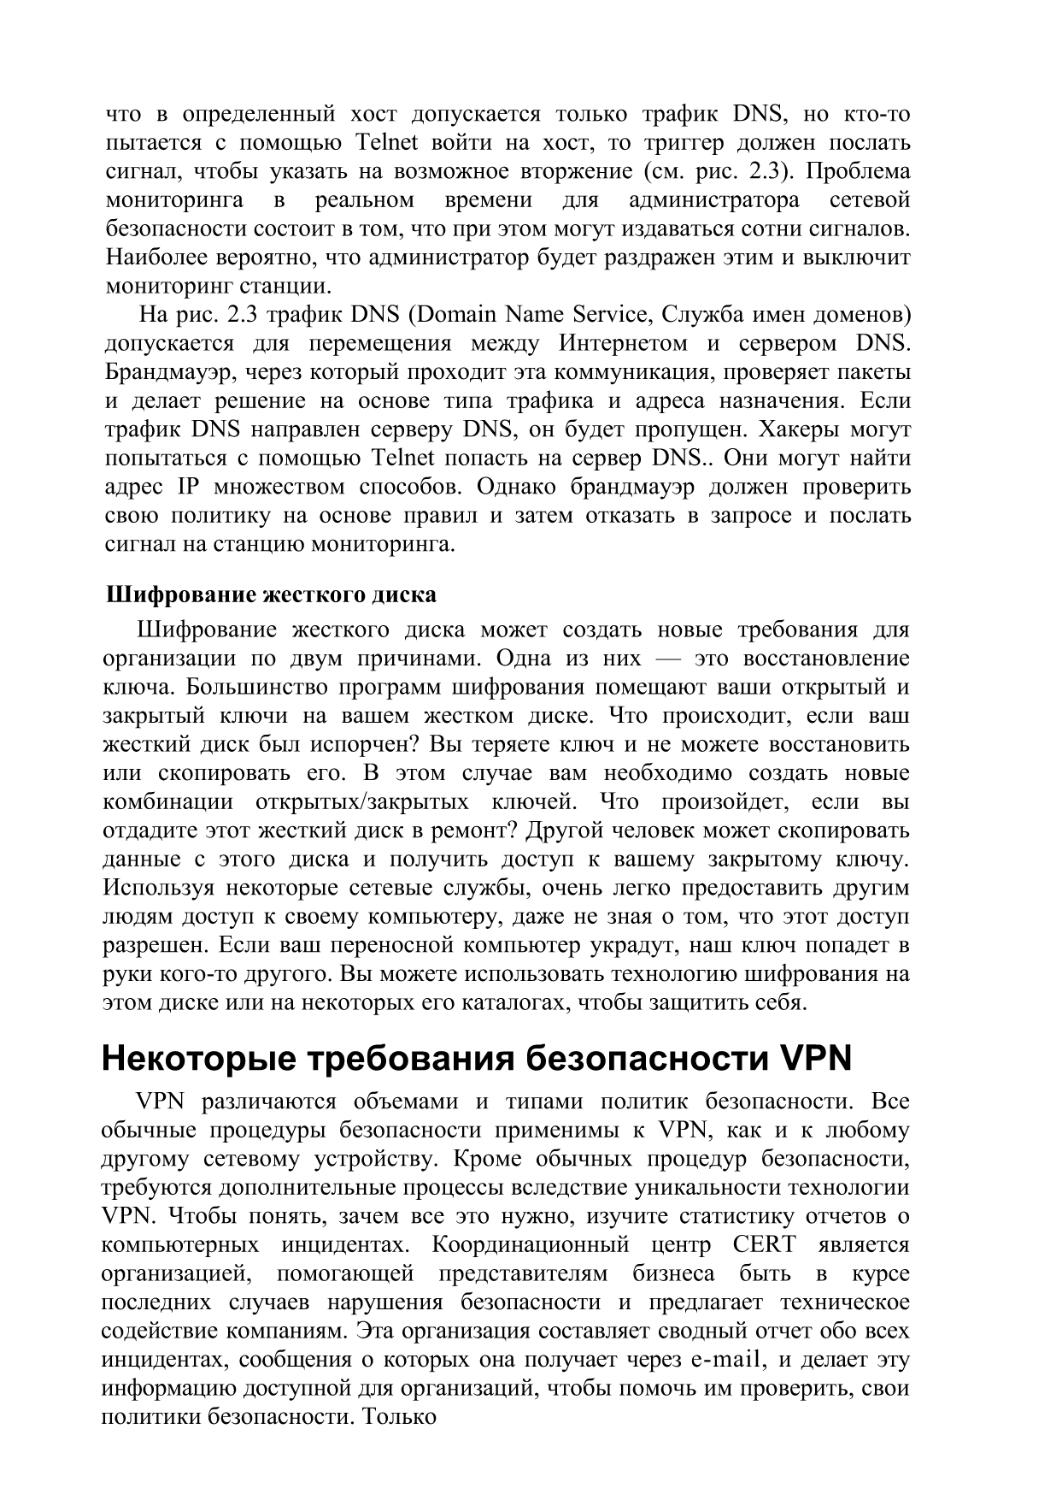 Некоторые требования безопасности VPN